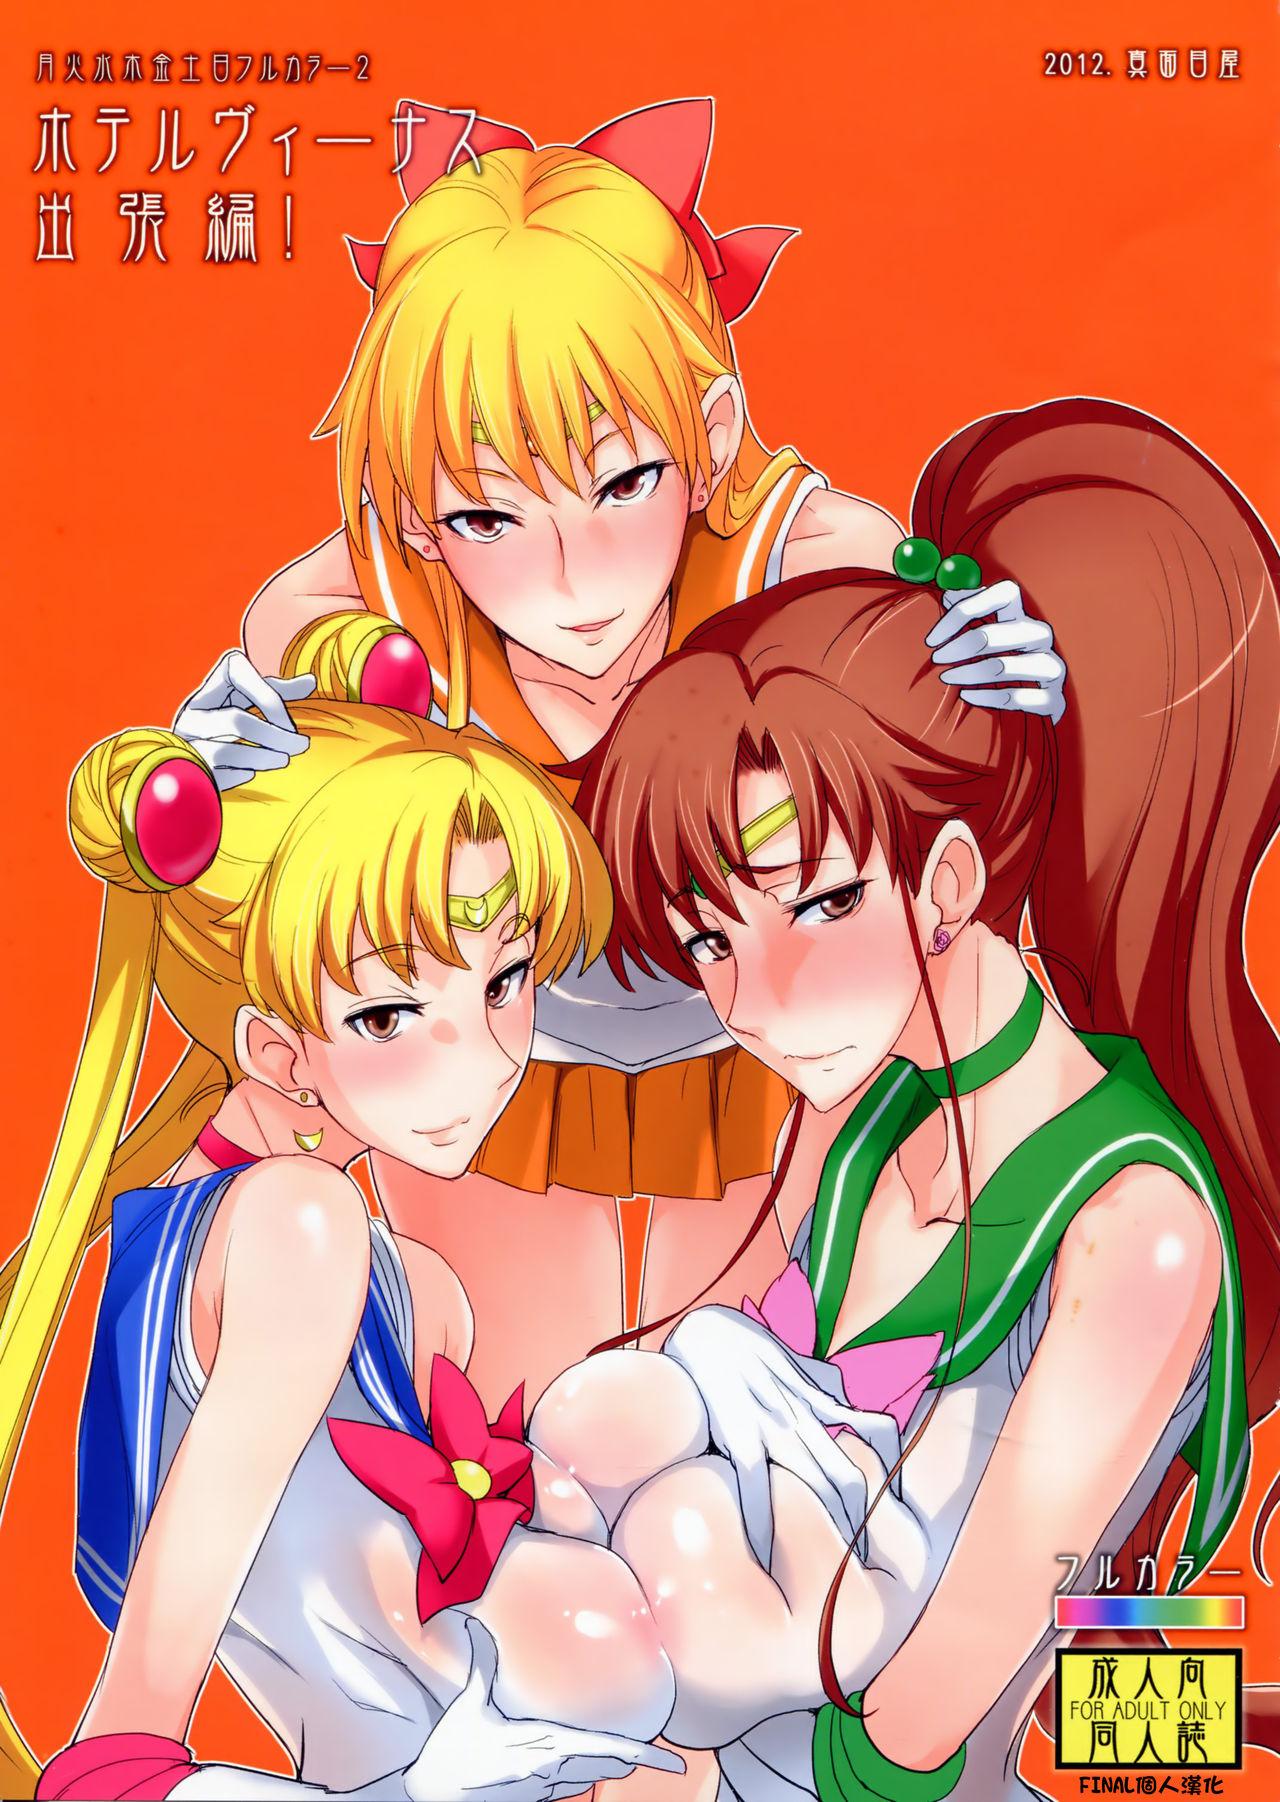 Pov Sex Getsu Ka Sui Moku Kin Do Nichi 2 - Sailor moon Dando - Page 1